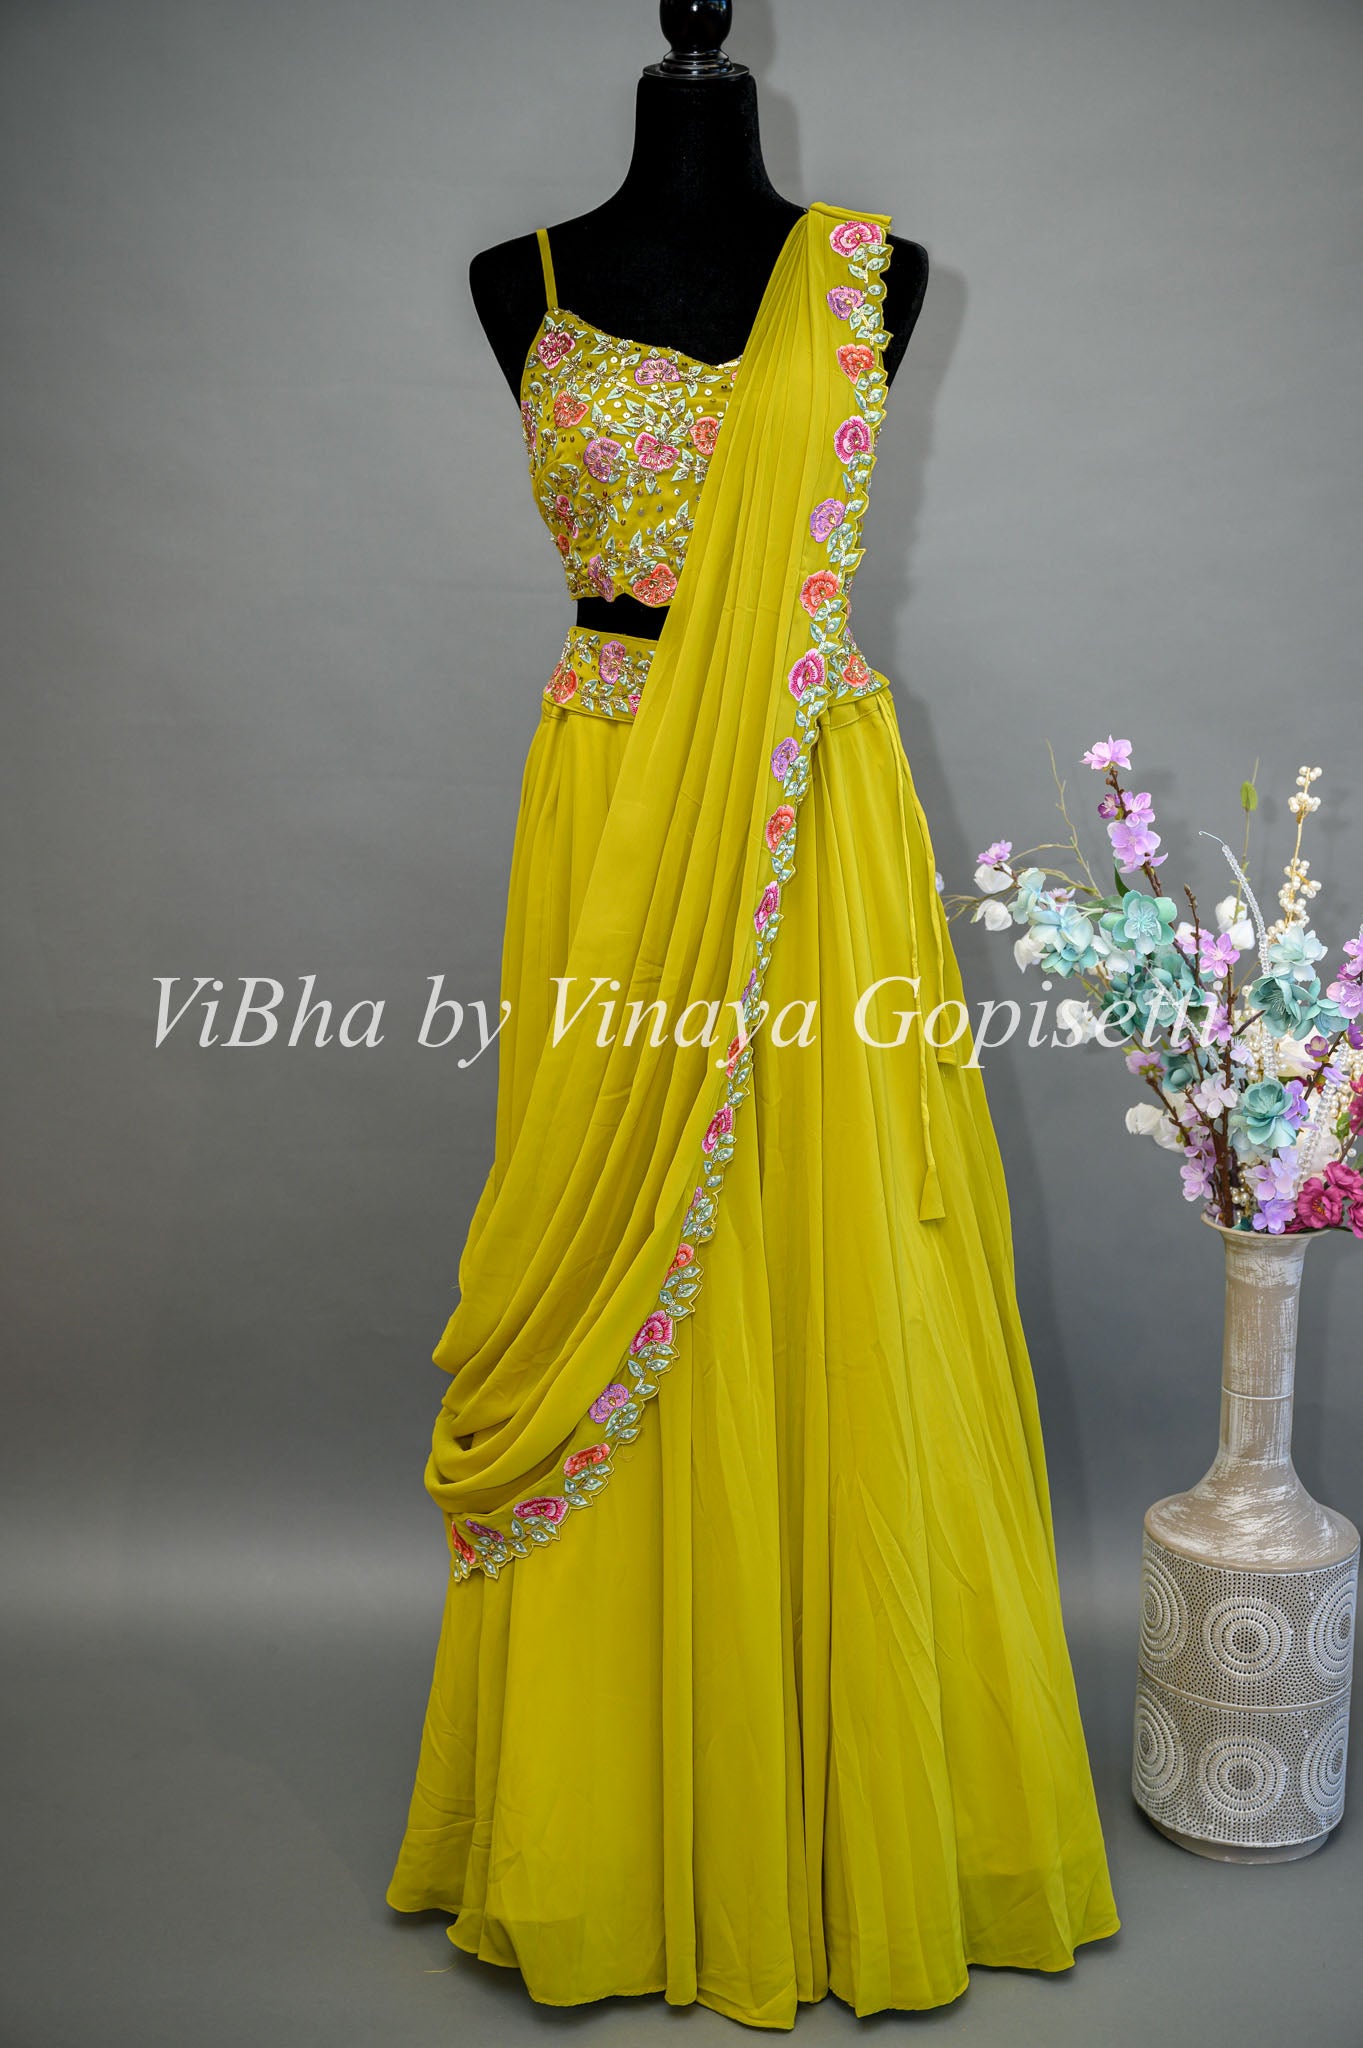 Snigdha Helenite navel in yellow blouse and like green lehenga : r/NavelNSFW